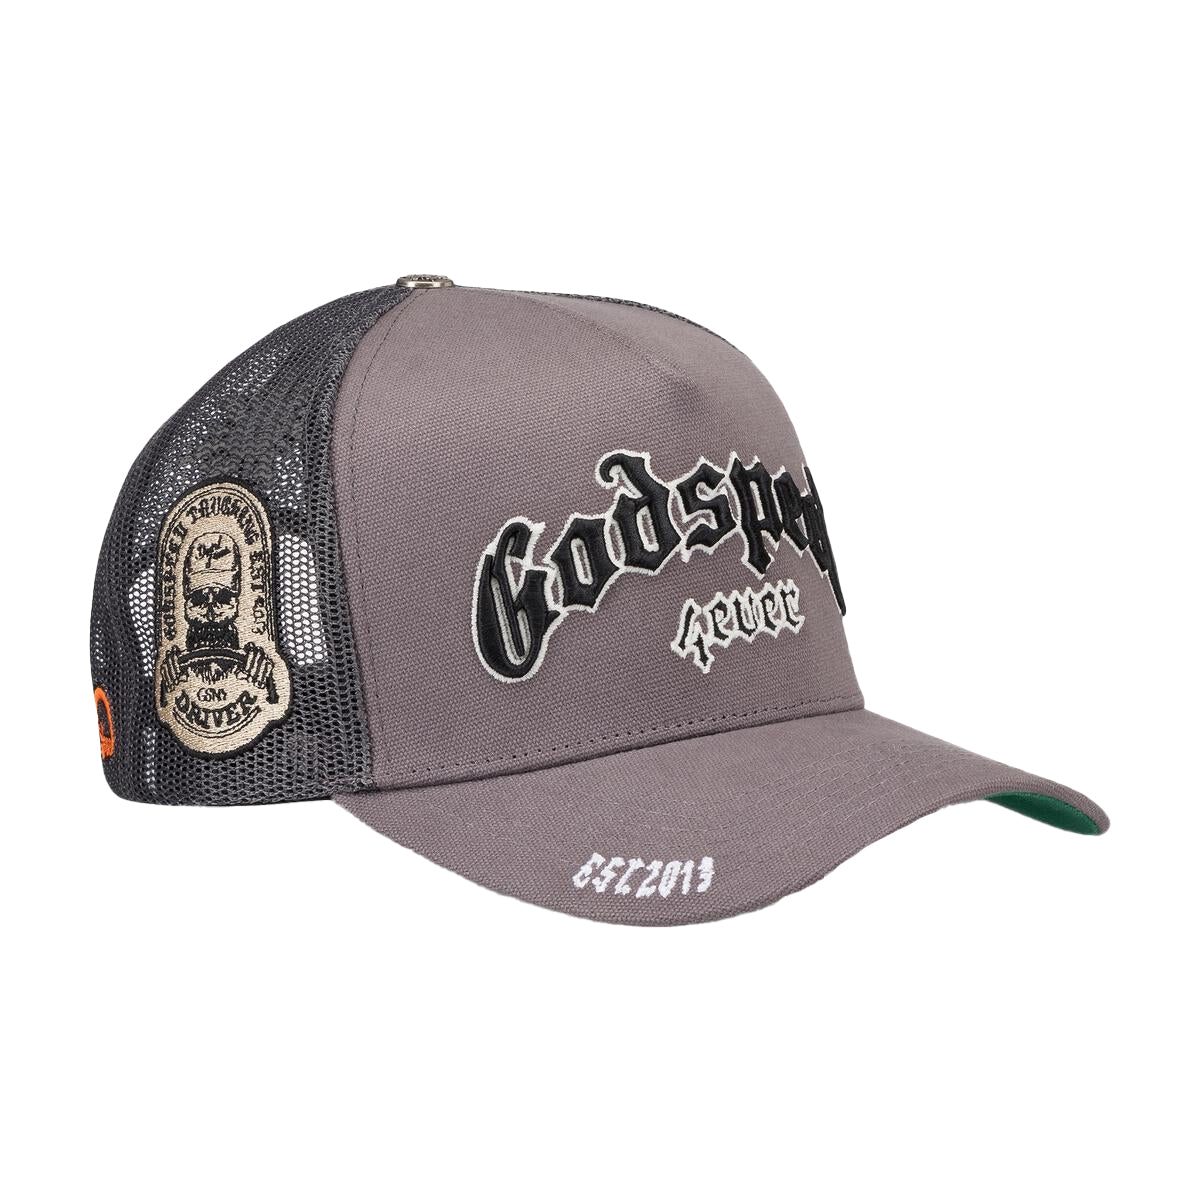 Godspeed GS Forever Trucker Hat Grey/White/Black